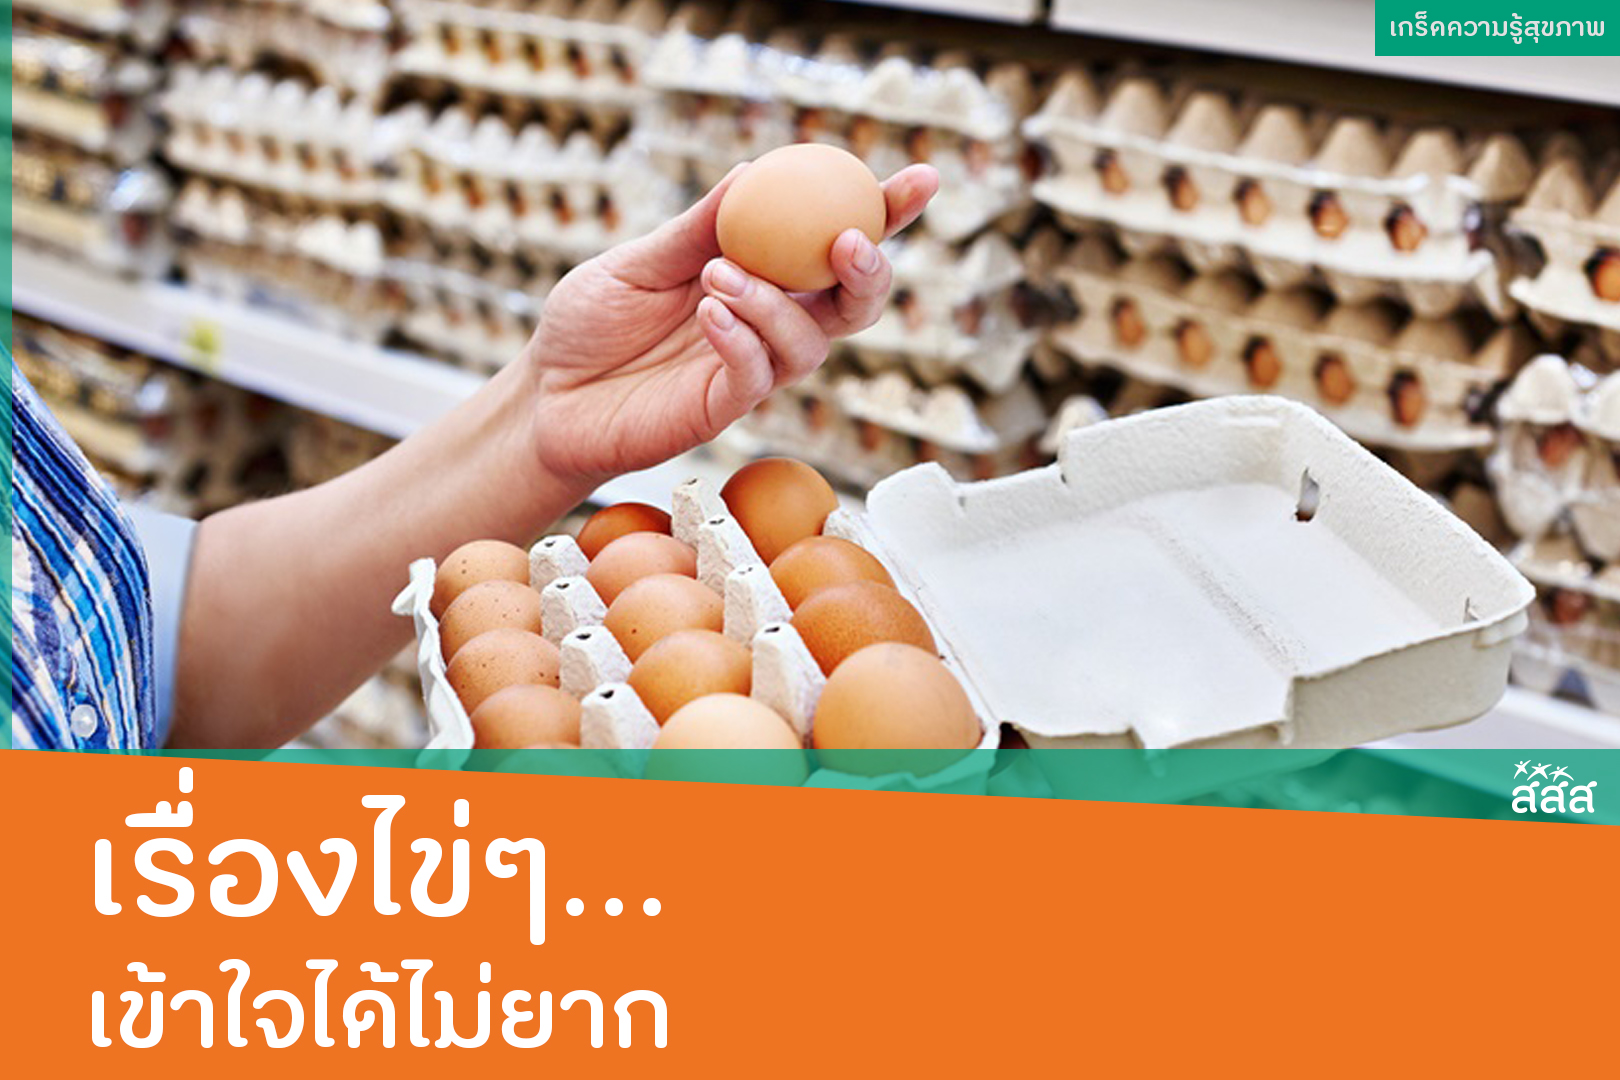 เรื่องไข่ๆ...เข้าใจได้ไม่ยาก thaihealth